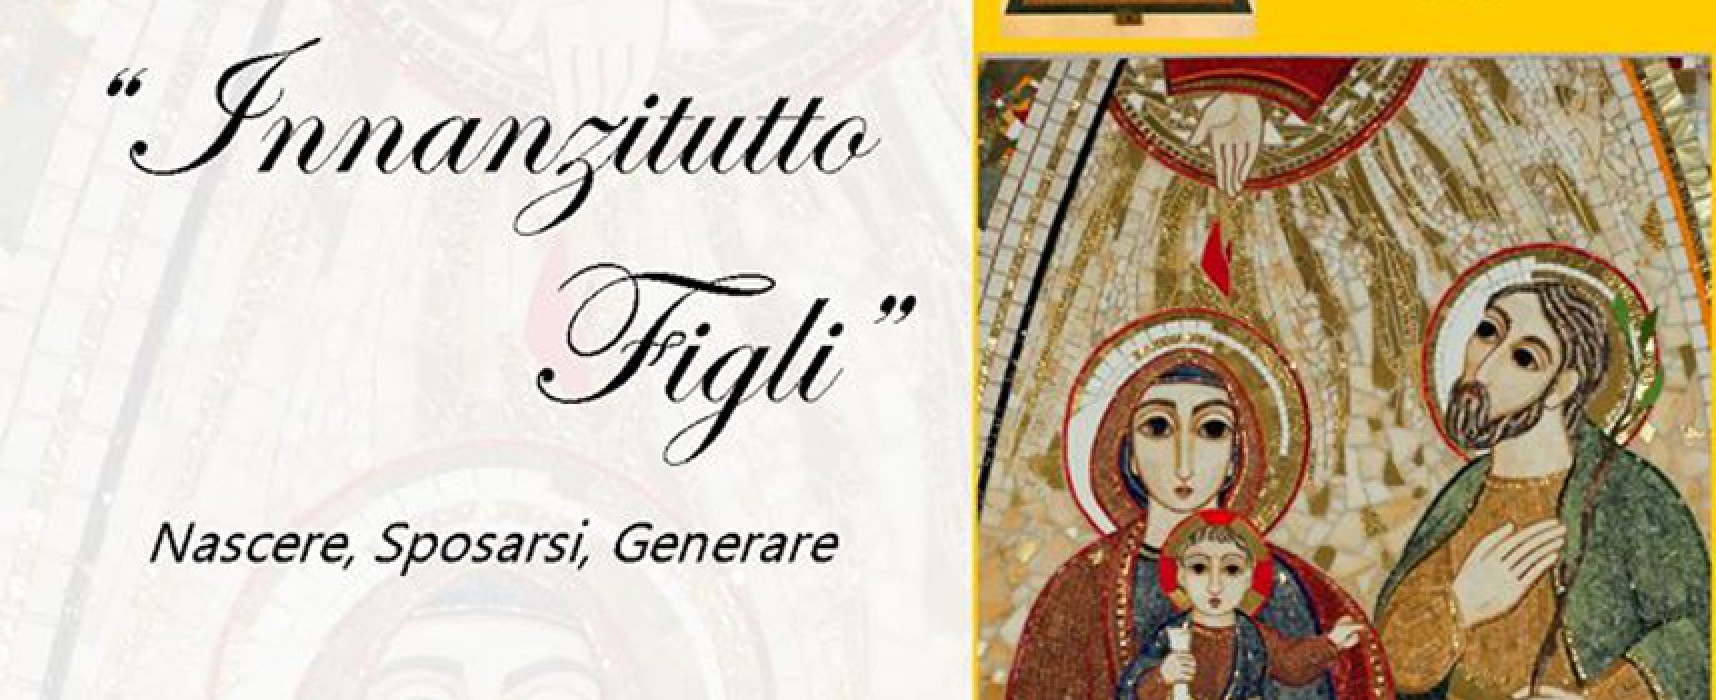 “Innanzitutto figli. Nascere, Sposarsi, Generare”, don Giulio Meiattini presenta a Bisceglie il suo libro